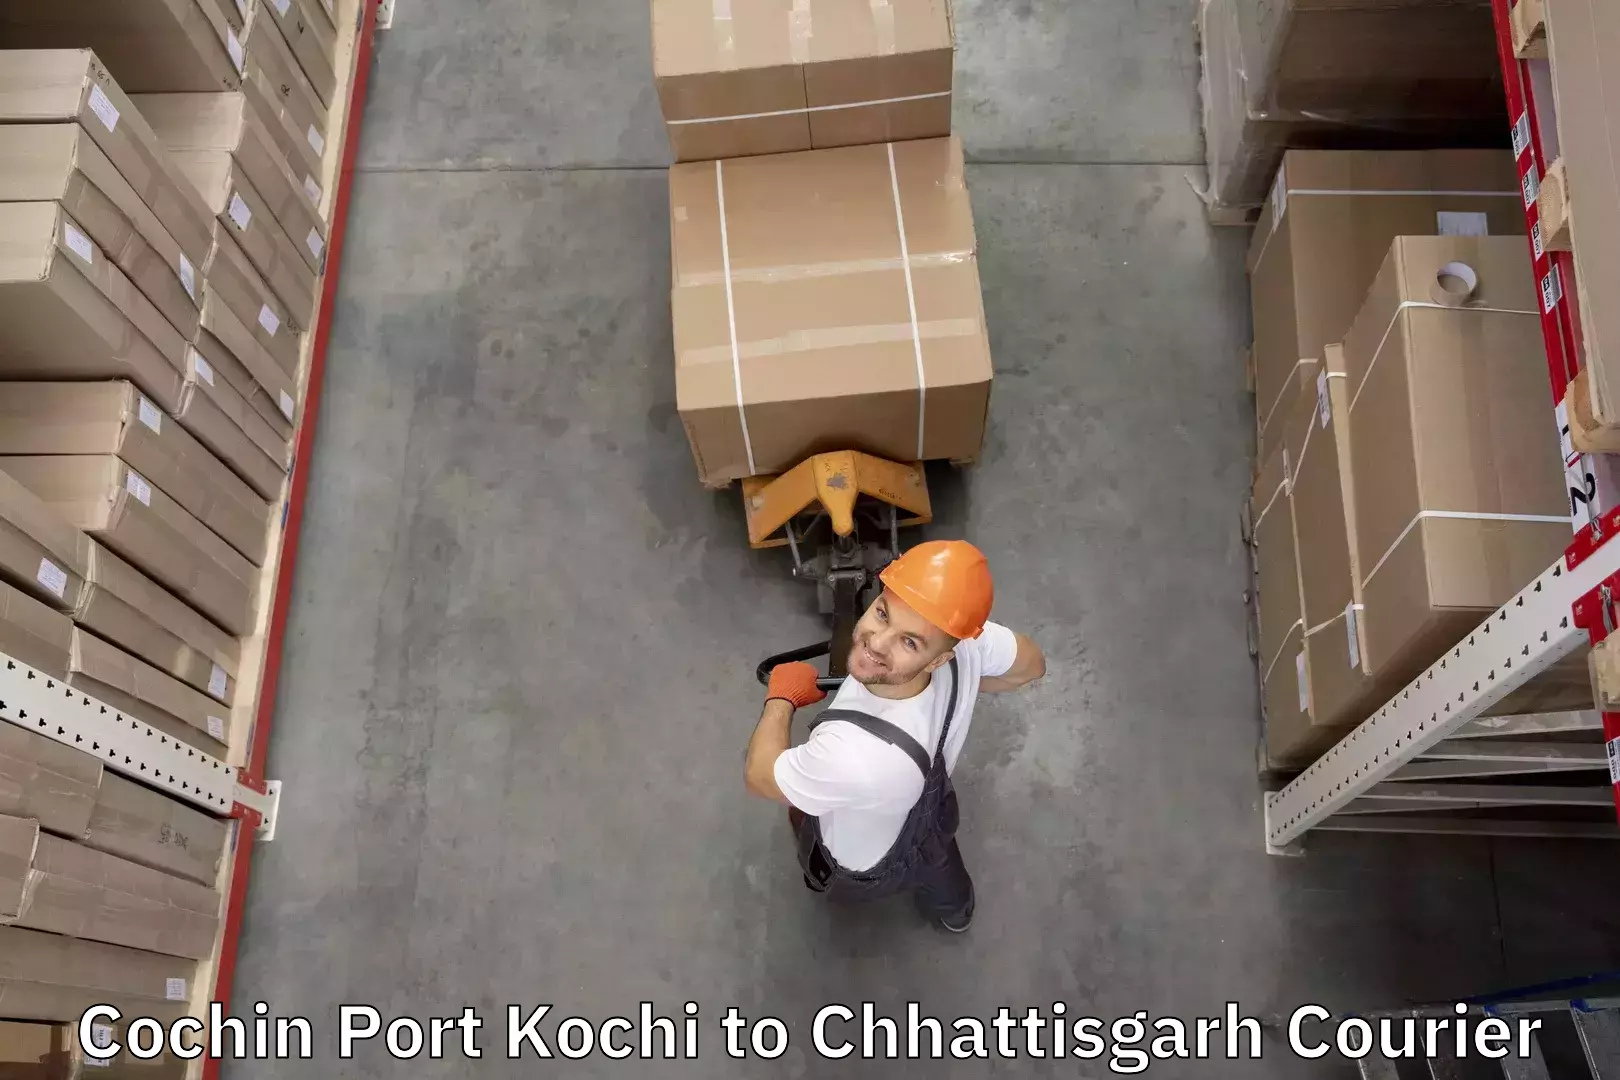 Baggage relocation service Cochin Port Kochi to Korea Chhattisgarh